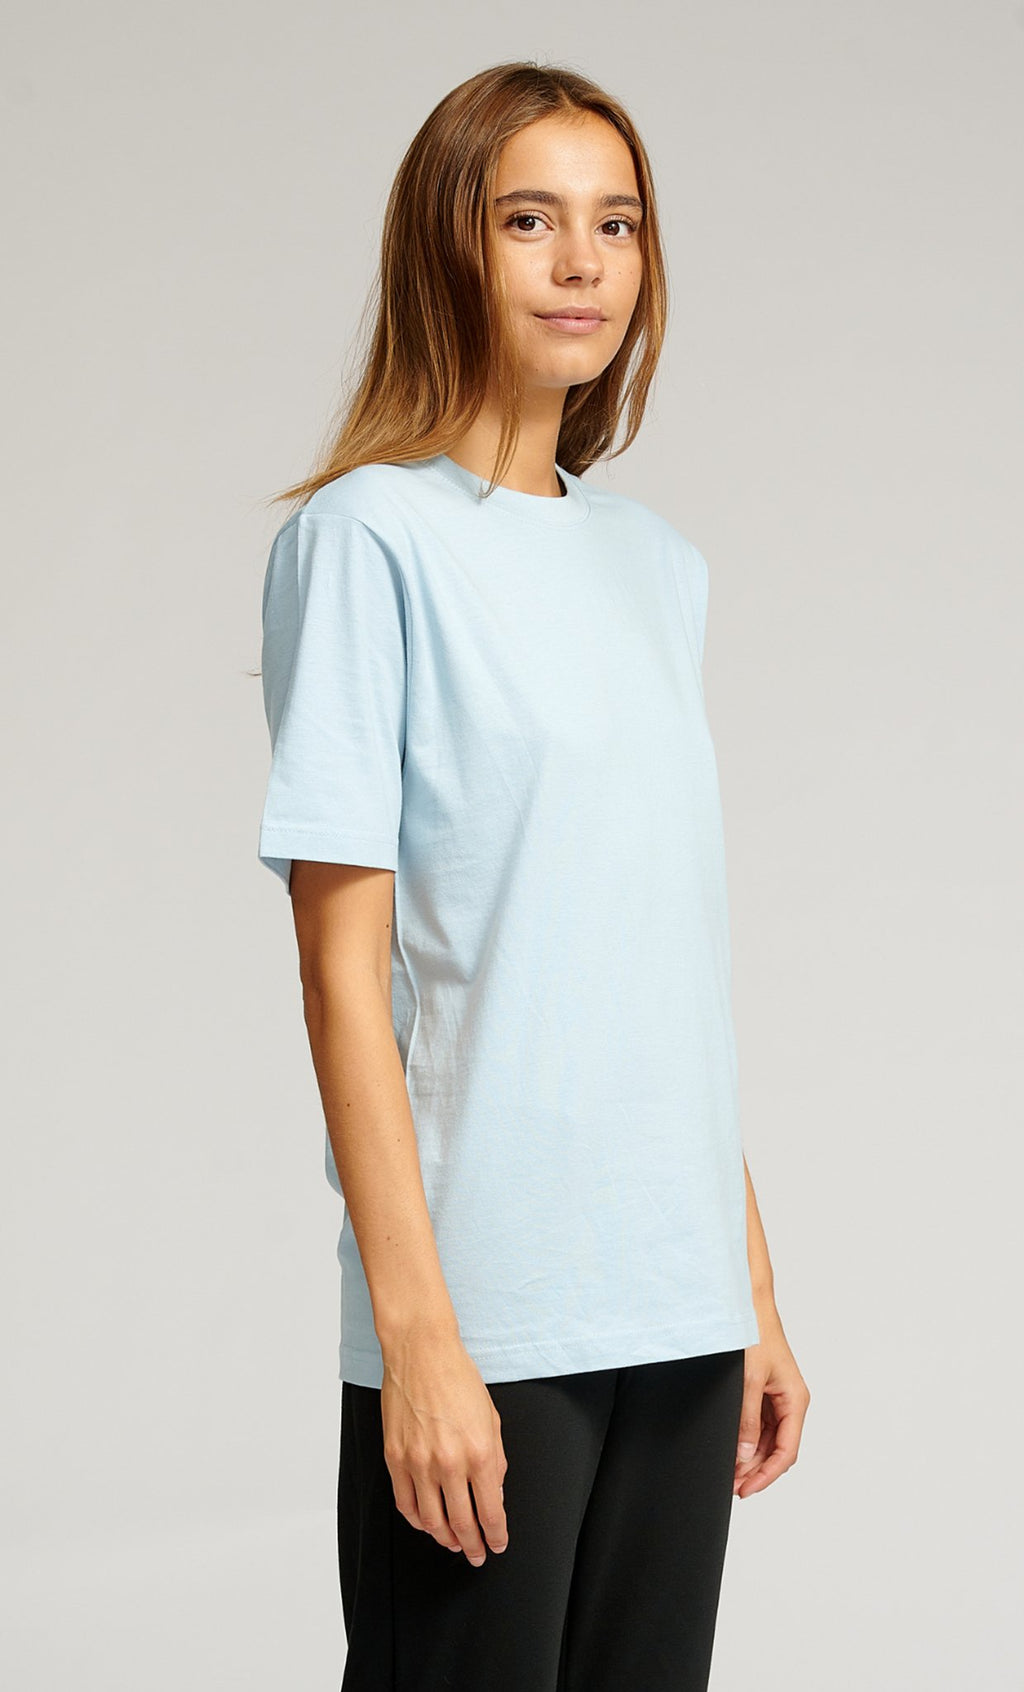 Nadmerné tričko - svetlo modrá (ženy)